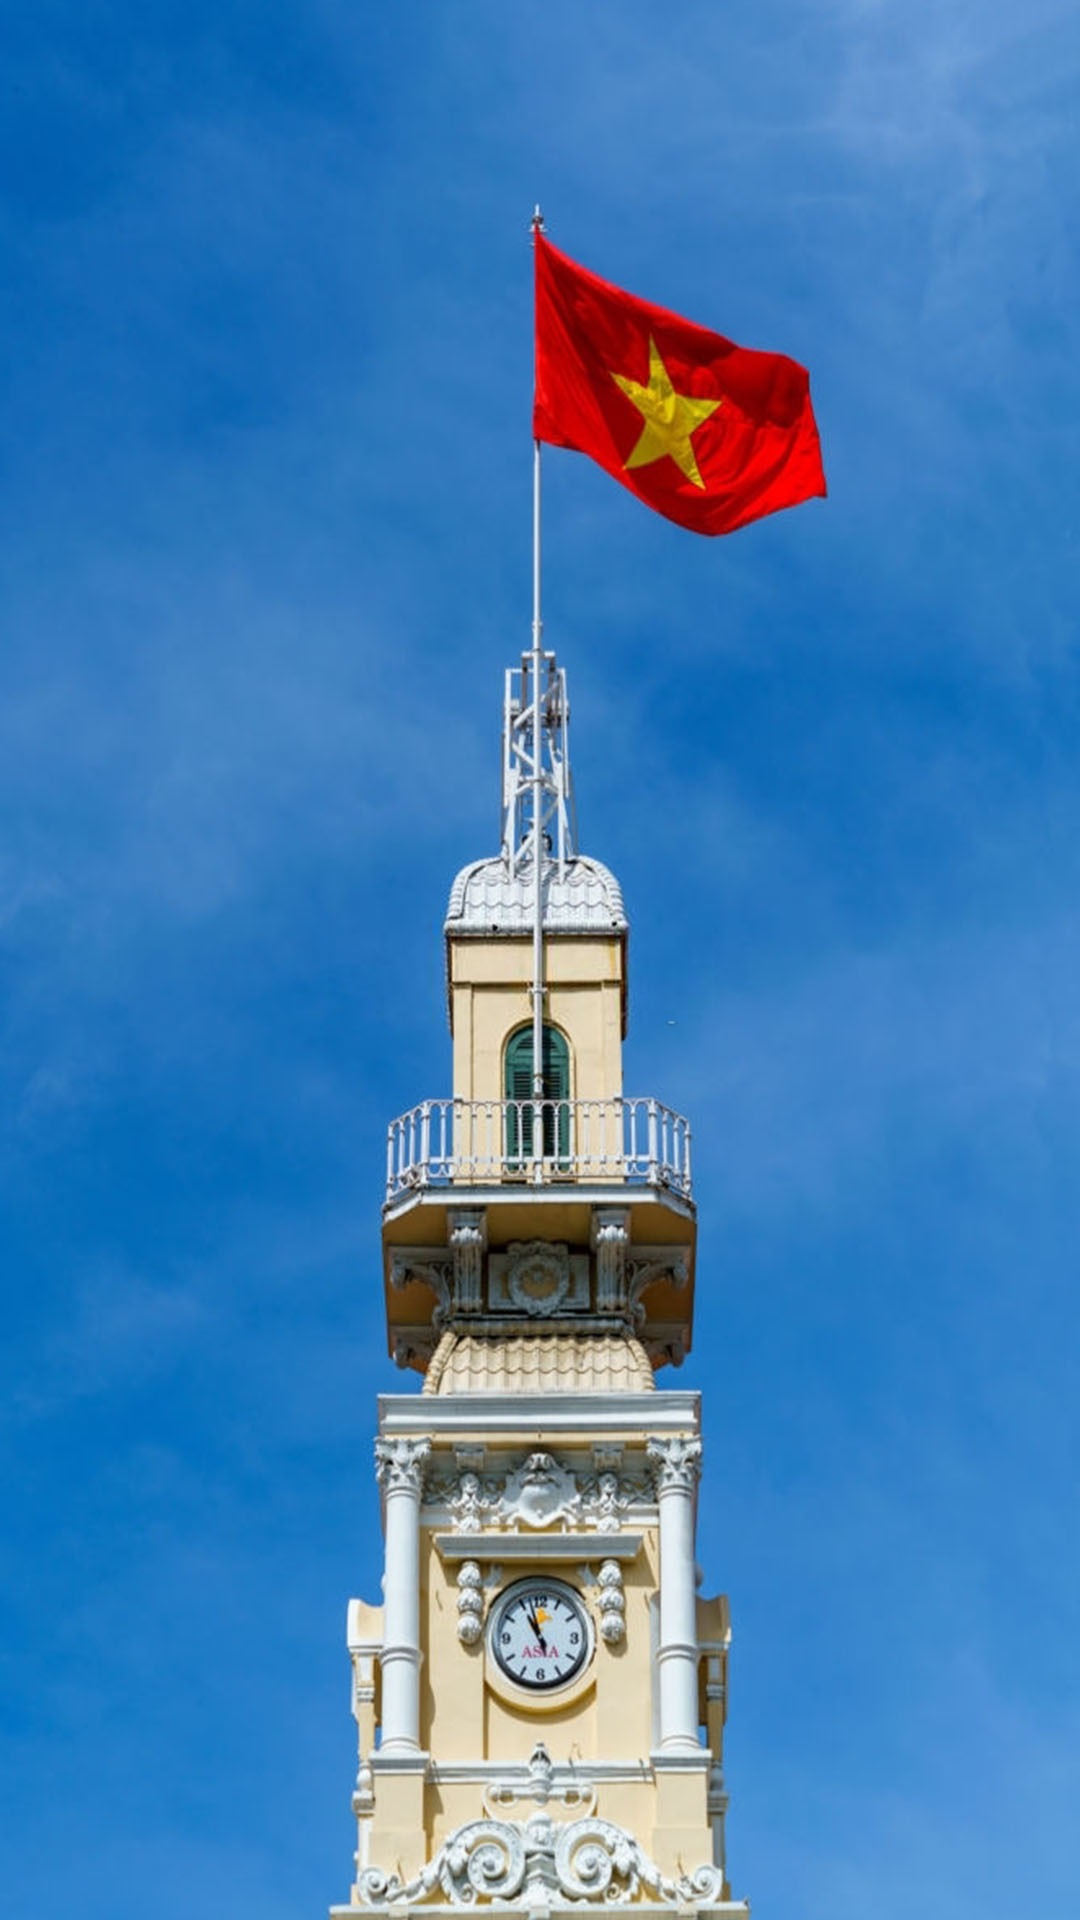 Quốc kỳ Việt Nam từ lâu đã trở thành biểu tượng thiêng liêng và đẹp đẽ của dân tộc Việt Nam. Hãy khám phá chi tiết các đường cong, nếp gấp với hình ảnh ngôi sao mười đầu toả sáng giữa bầu trời xanh. Bạn sẽ có được một bức tranh tuyệt đẹp về quê hương, nơi mà tình yêu và sự tự hào đượm đầy trong từng nếp gấp của cờ.